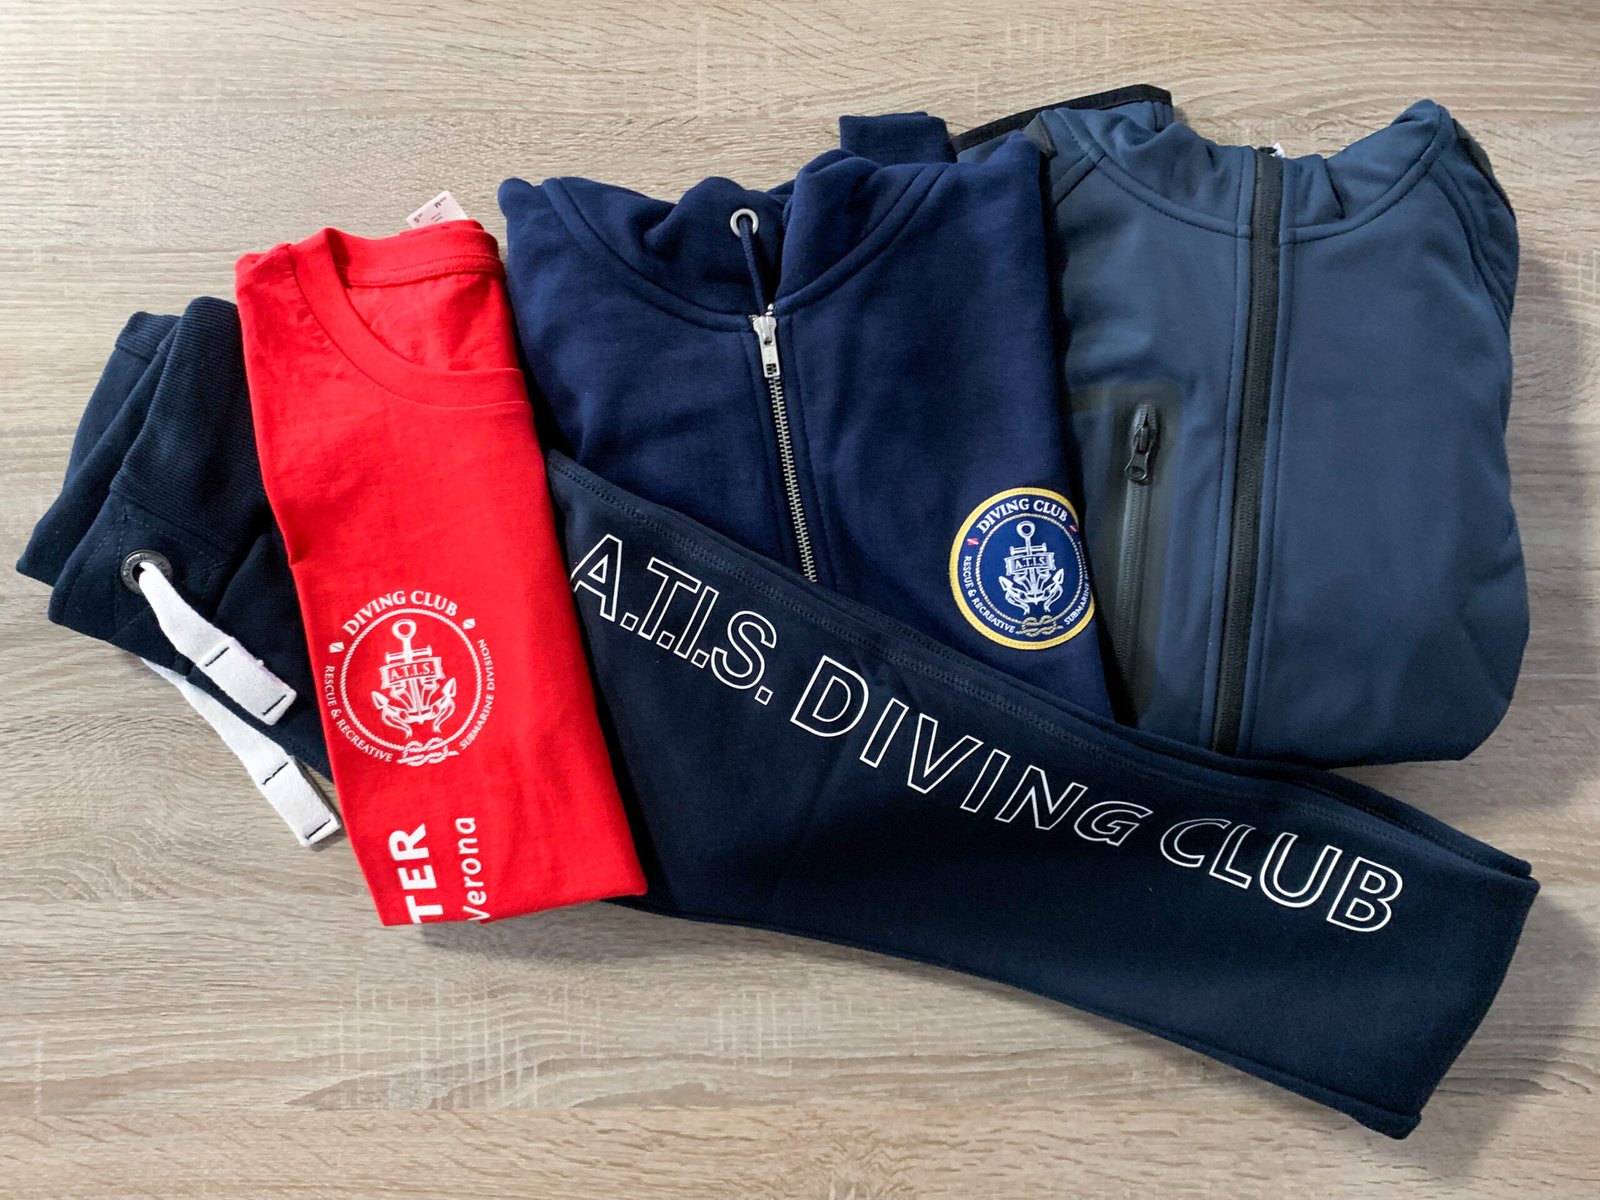 Divisa subacquea ATIS Diving Club